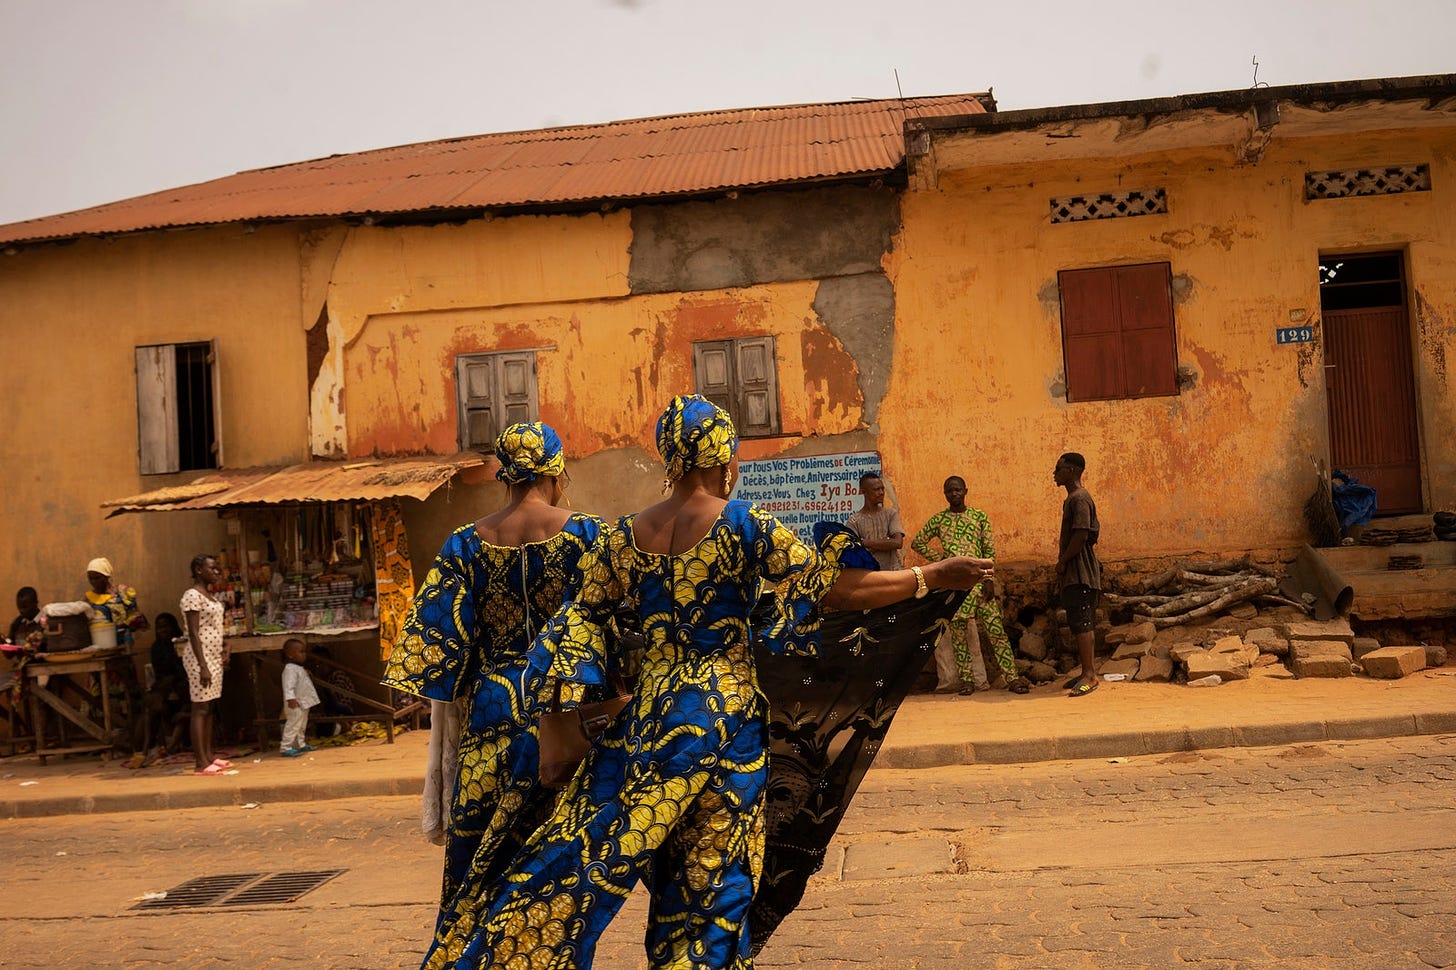 Two African women crossing a street.